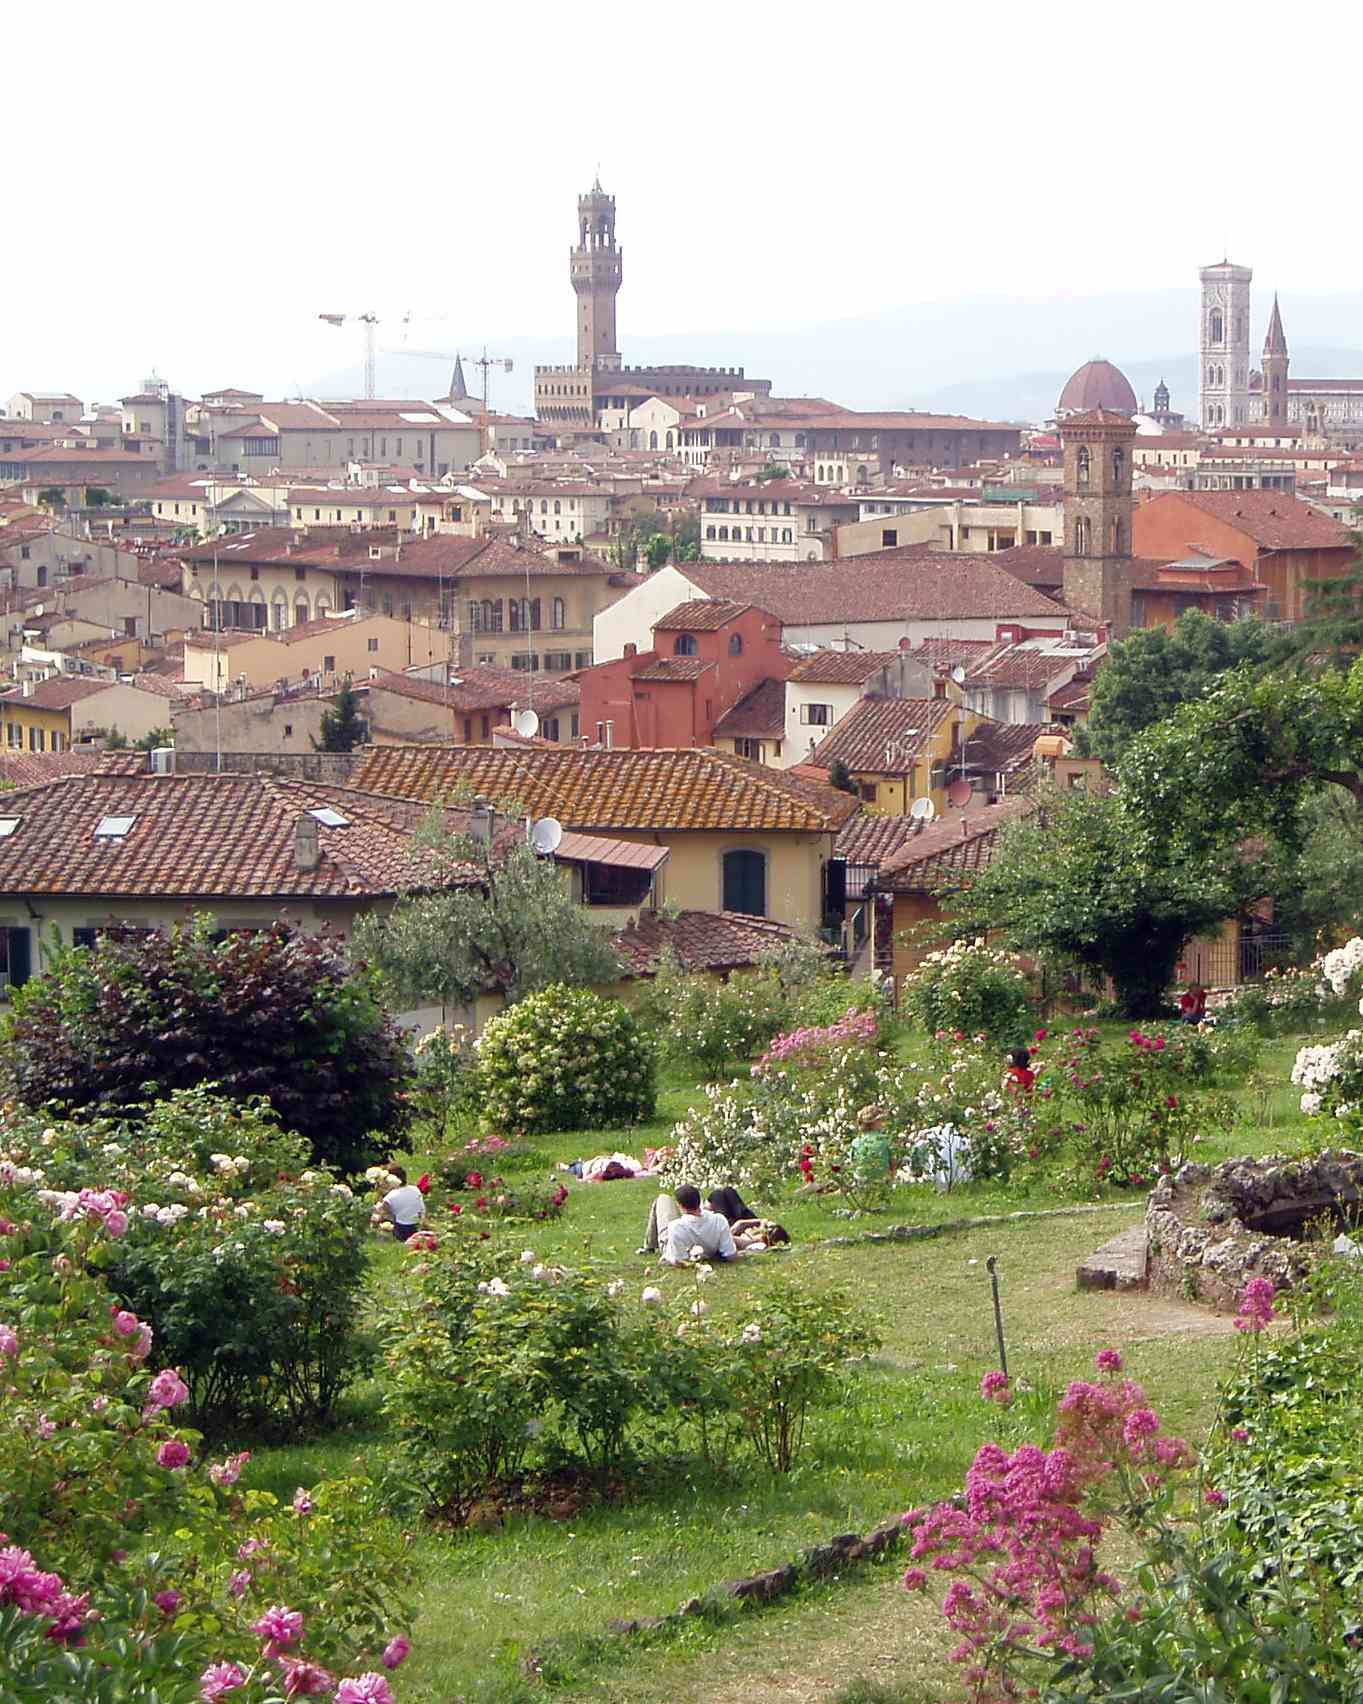 Giardino delle Rose, Florence, Italy